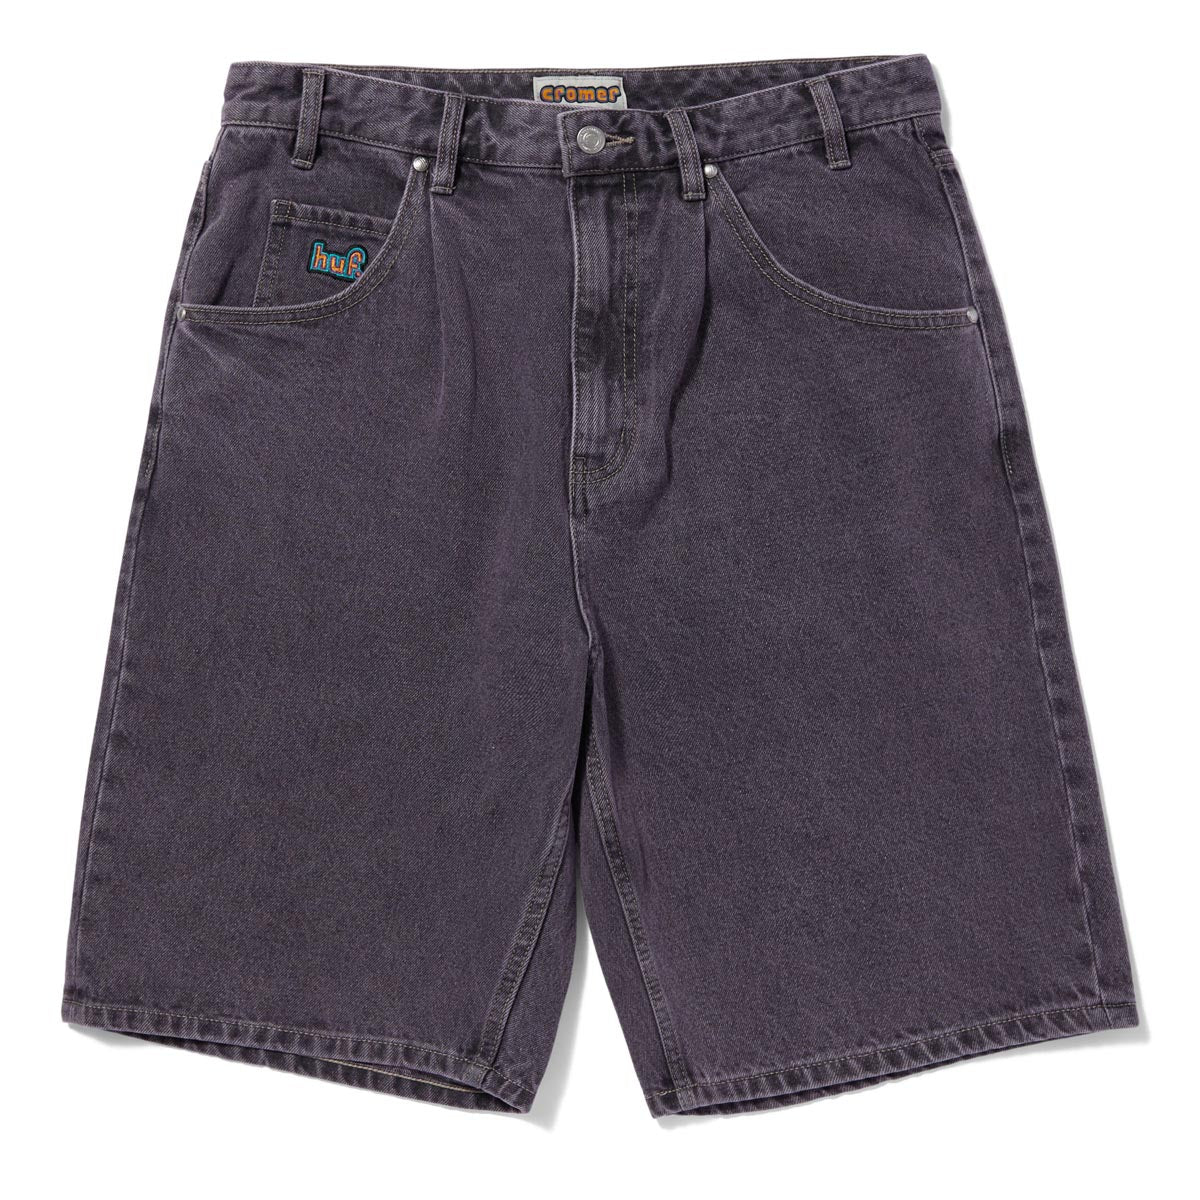 HUF Cromer Shorts - Lavender image 1